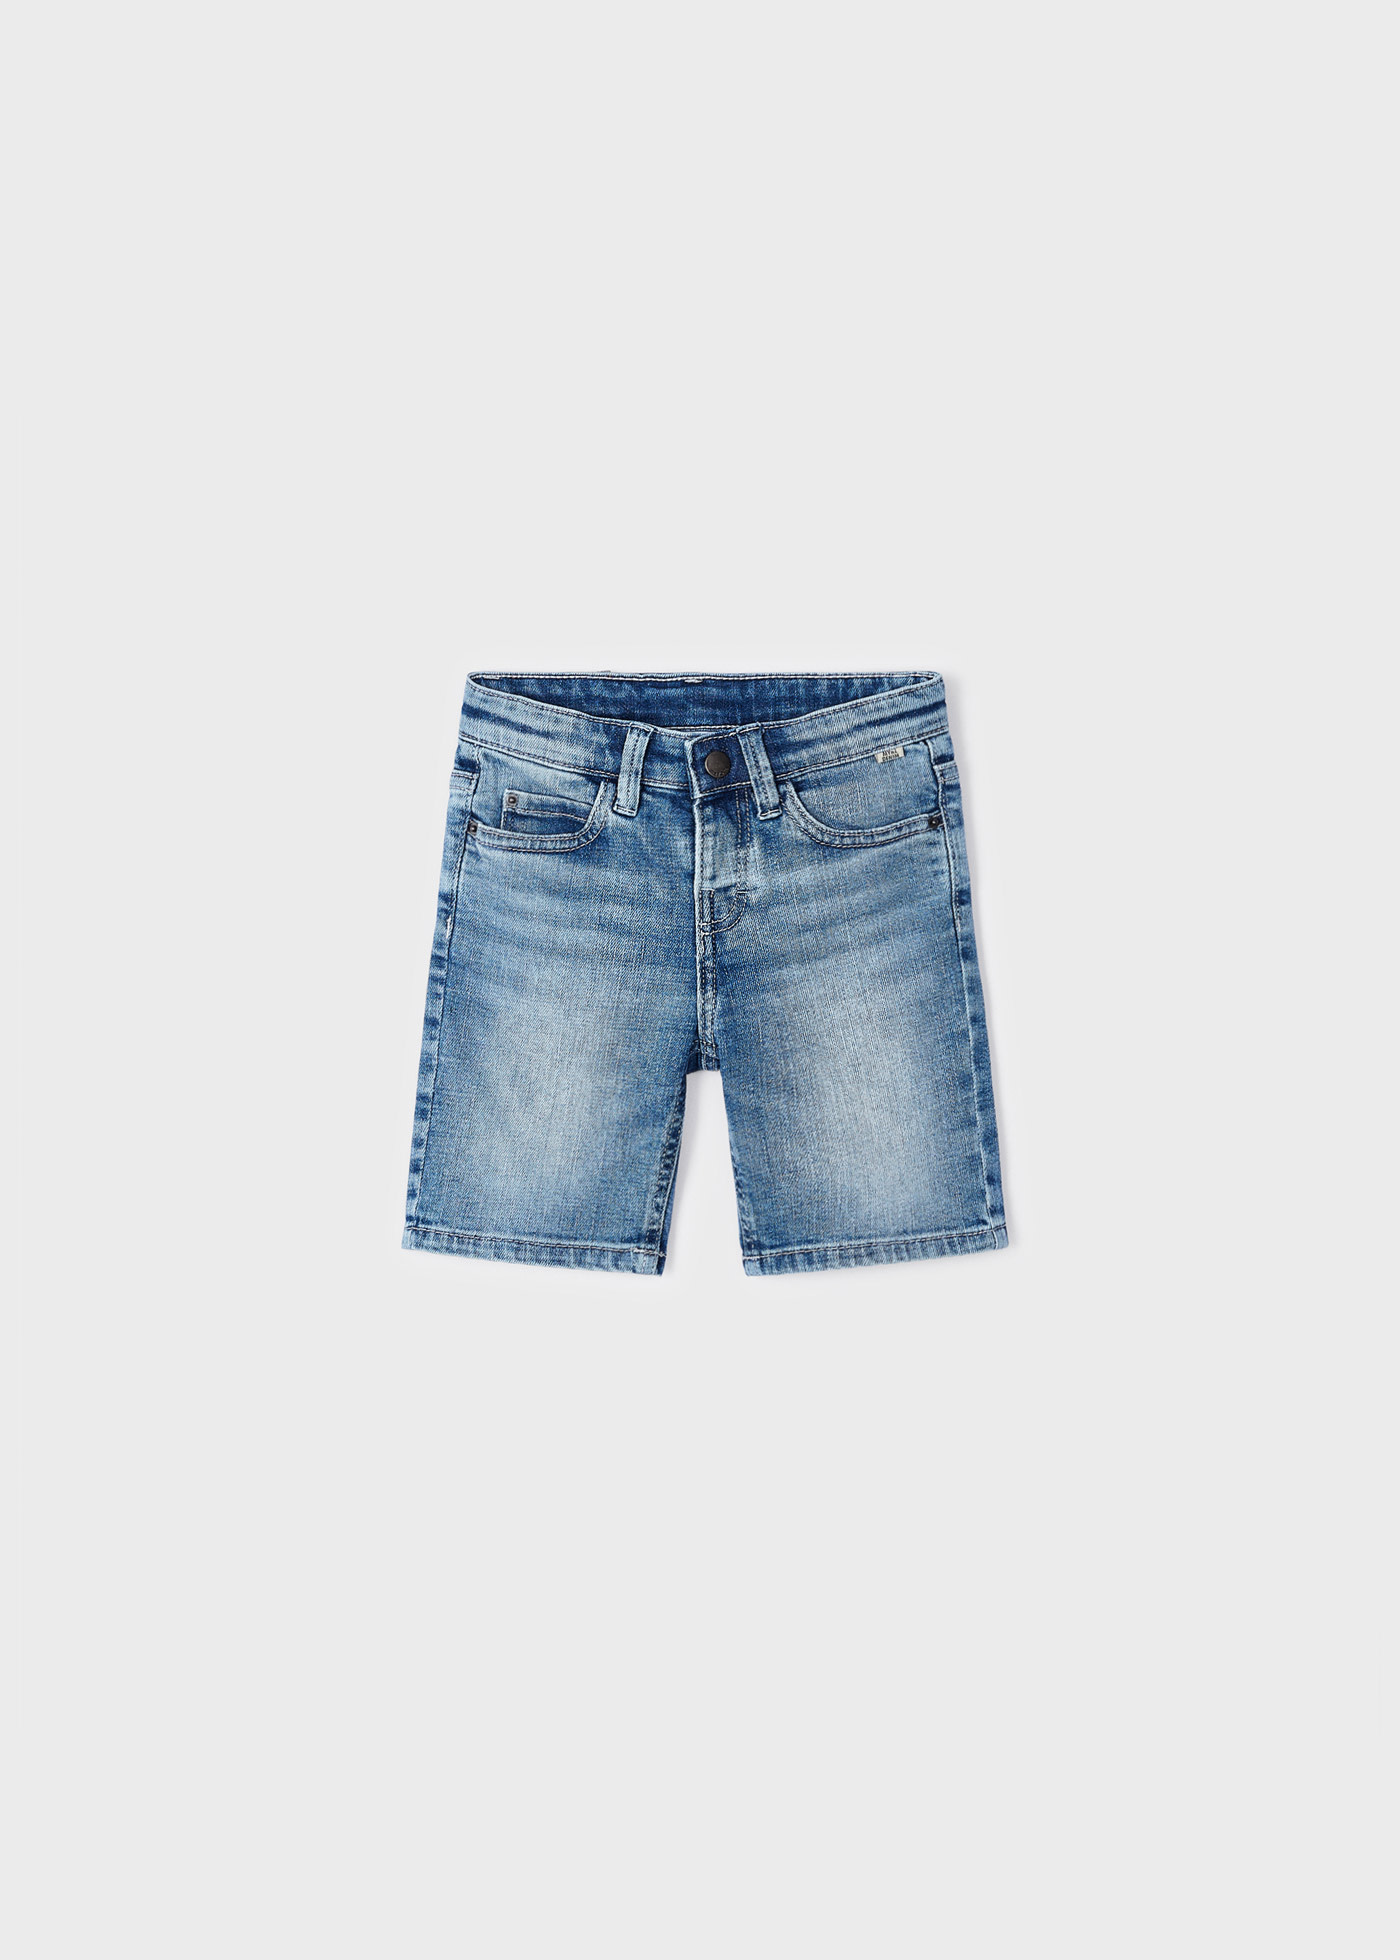 BDG 100% Cotton Solid Blue Denim Shorts 30 Waist - 57% off